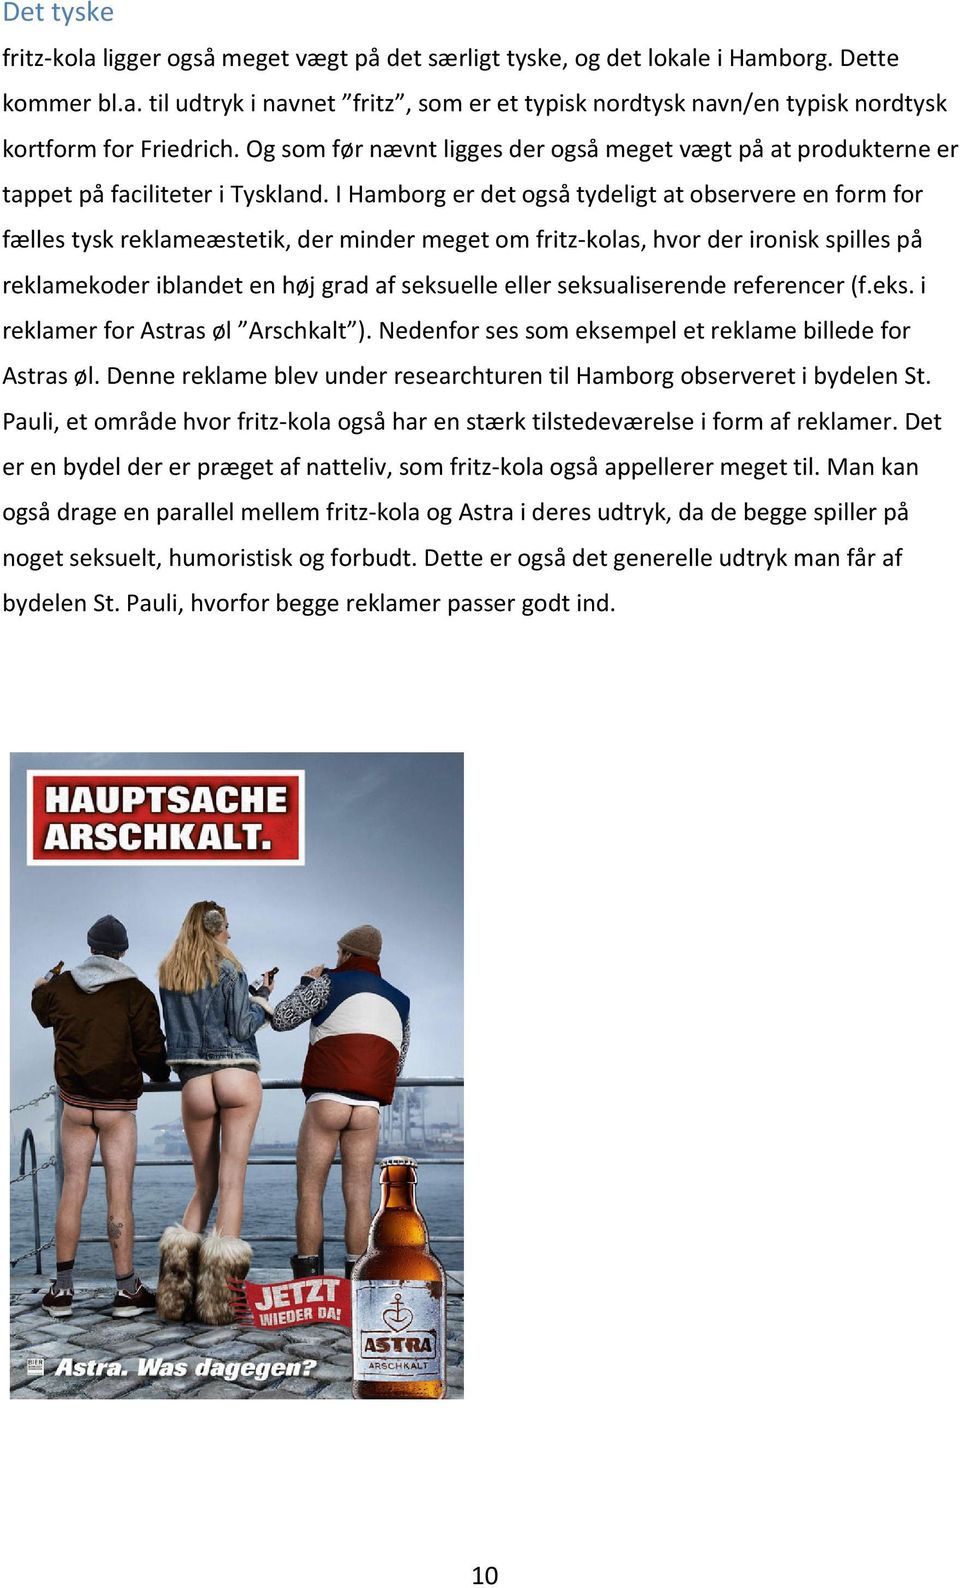 I Hamborg er det også tydeligt at observere en form for fælles tysk reklameæstetik, der minder meget om fritz kolas, hvor der ironisk spilles på reklamekoder iblandet en høj grad af seksuelle eller